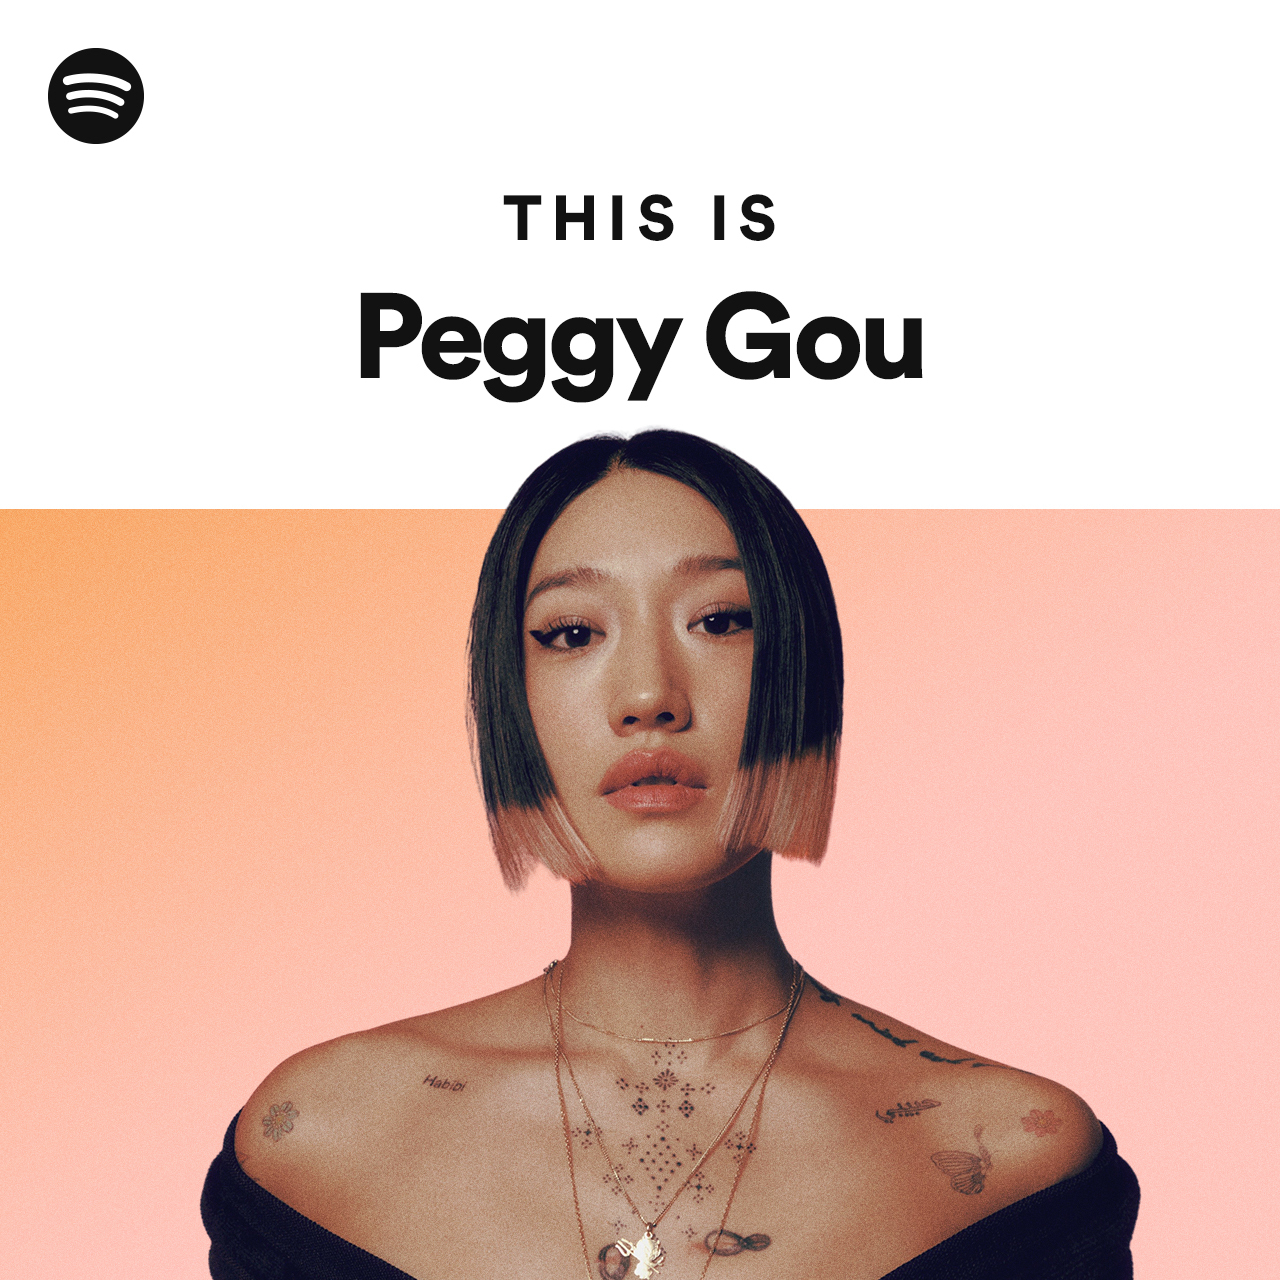 Peggy Gou Goes Global